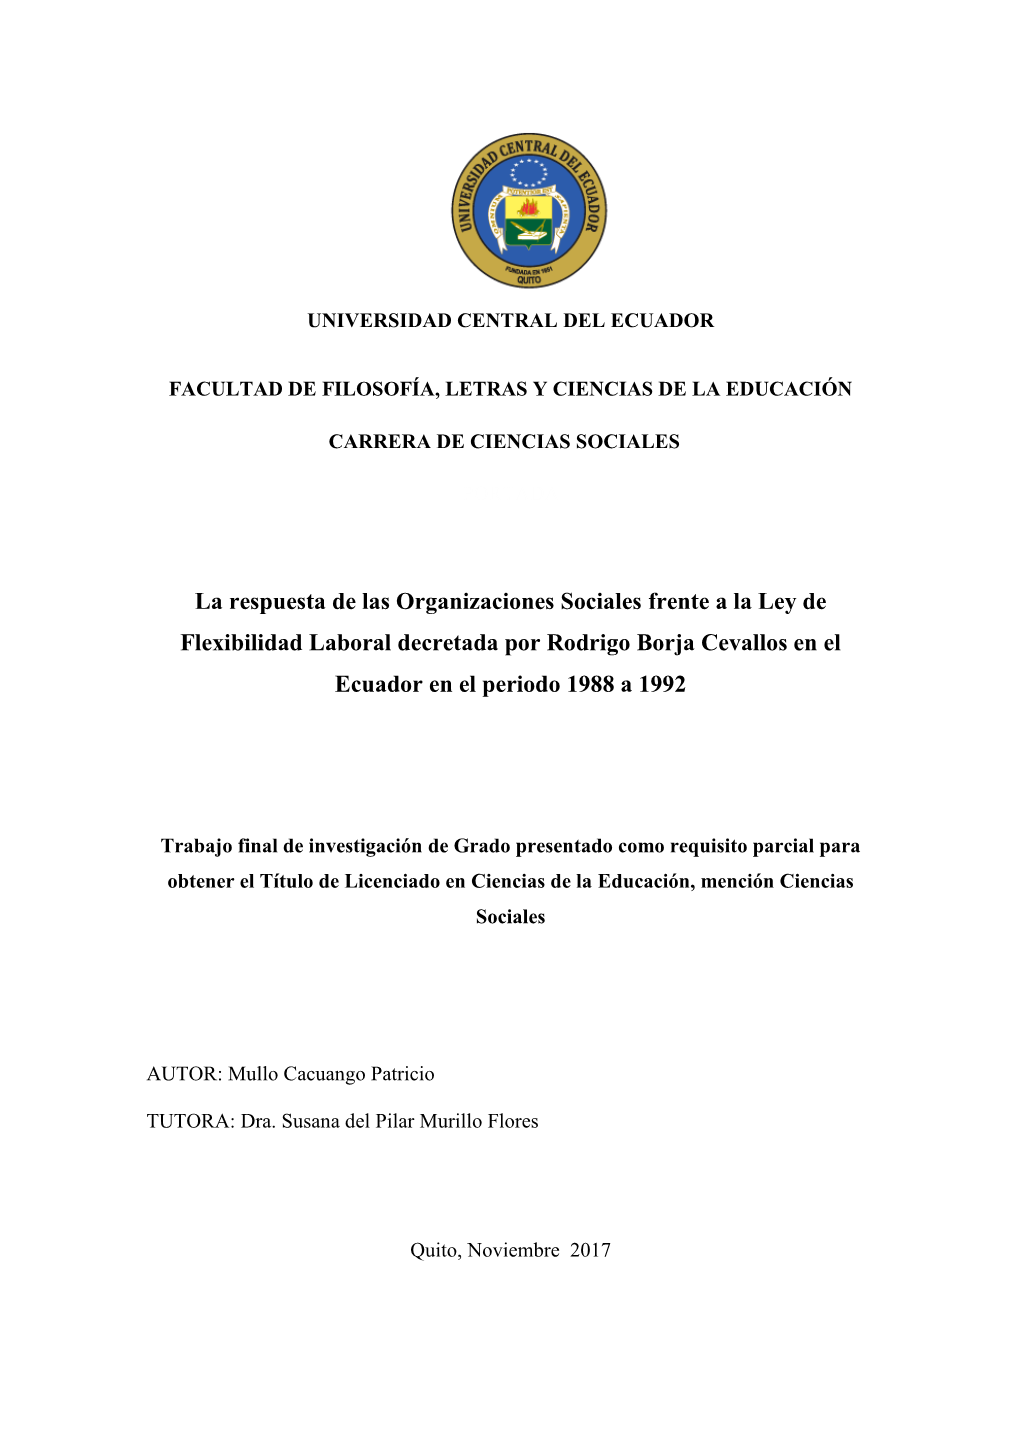 La Respuesta De Las Organizaciones Sociales Frente a La Ley De Flexibilidad Laboral Decretada Por Rodrigo Borja Cevallos En El Ecuador En El Periodo 1988 a 1992